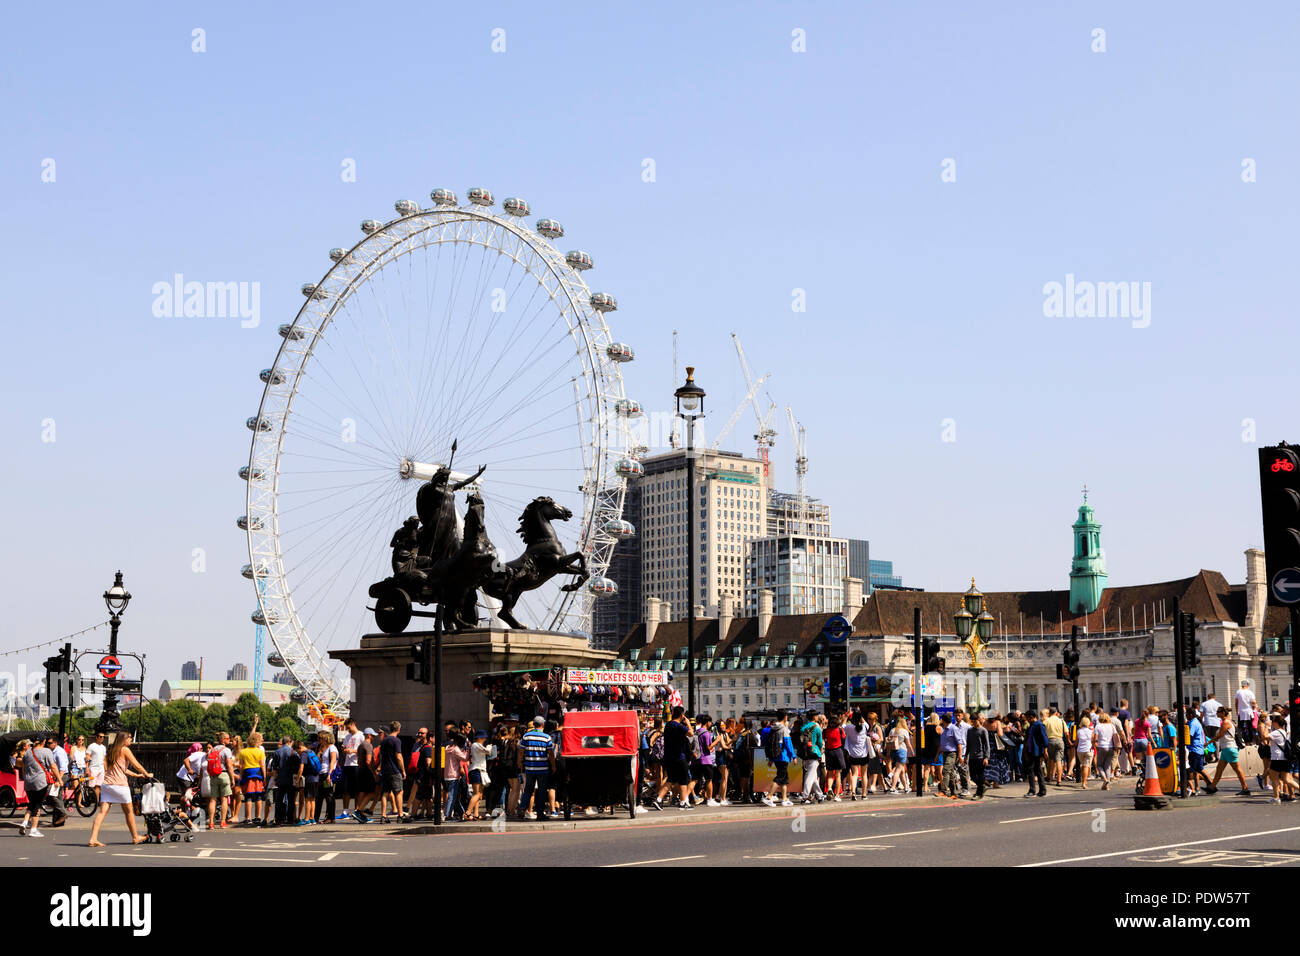 Foule de Westminster Bridge avec la grande roue London Eye Coca-Cola sur la rive sud de la Tamise, Lambeth, Londres, Angleterre Banque D'Images